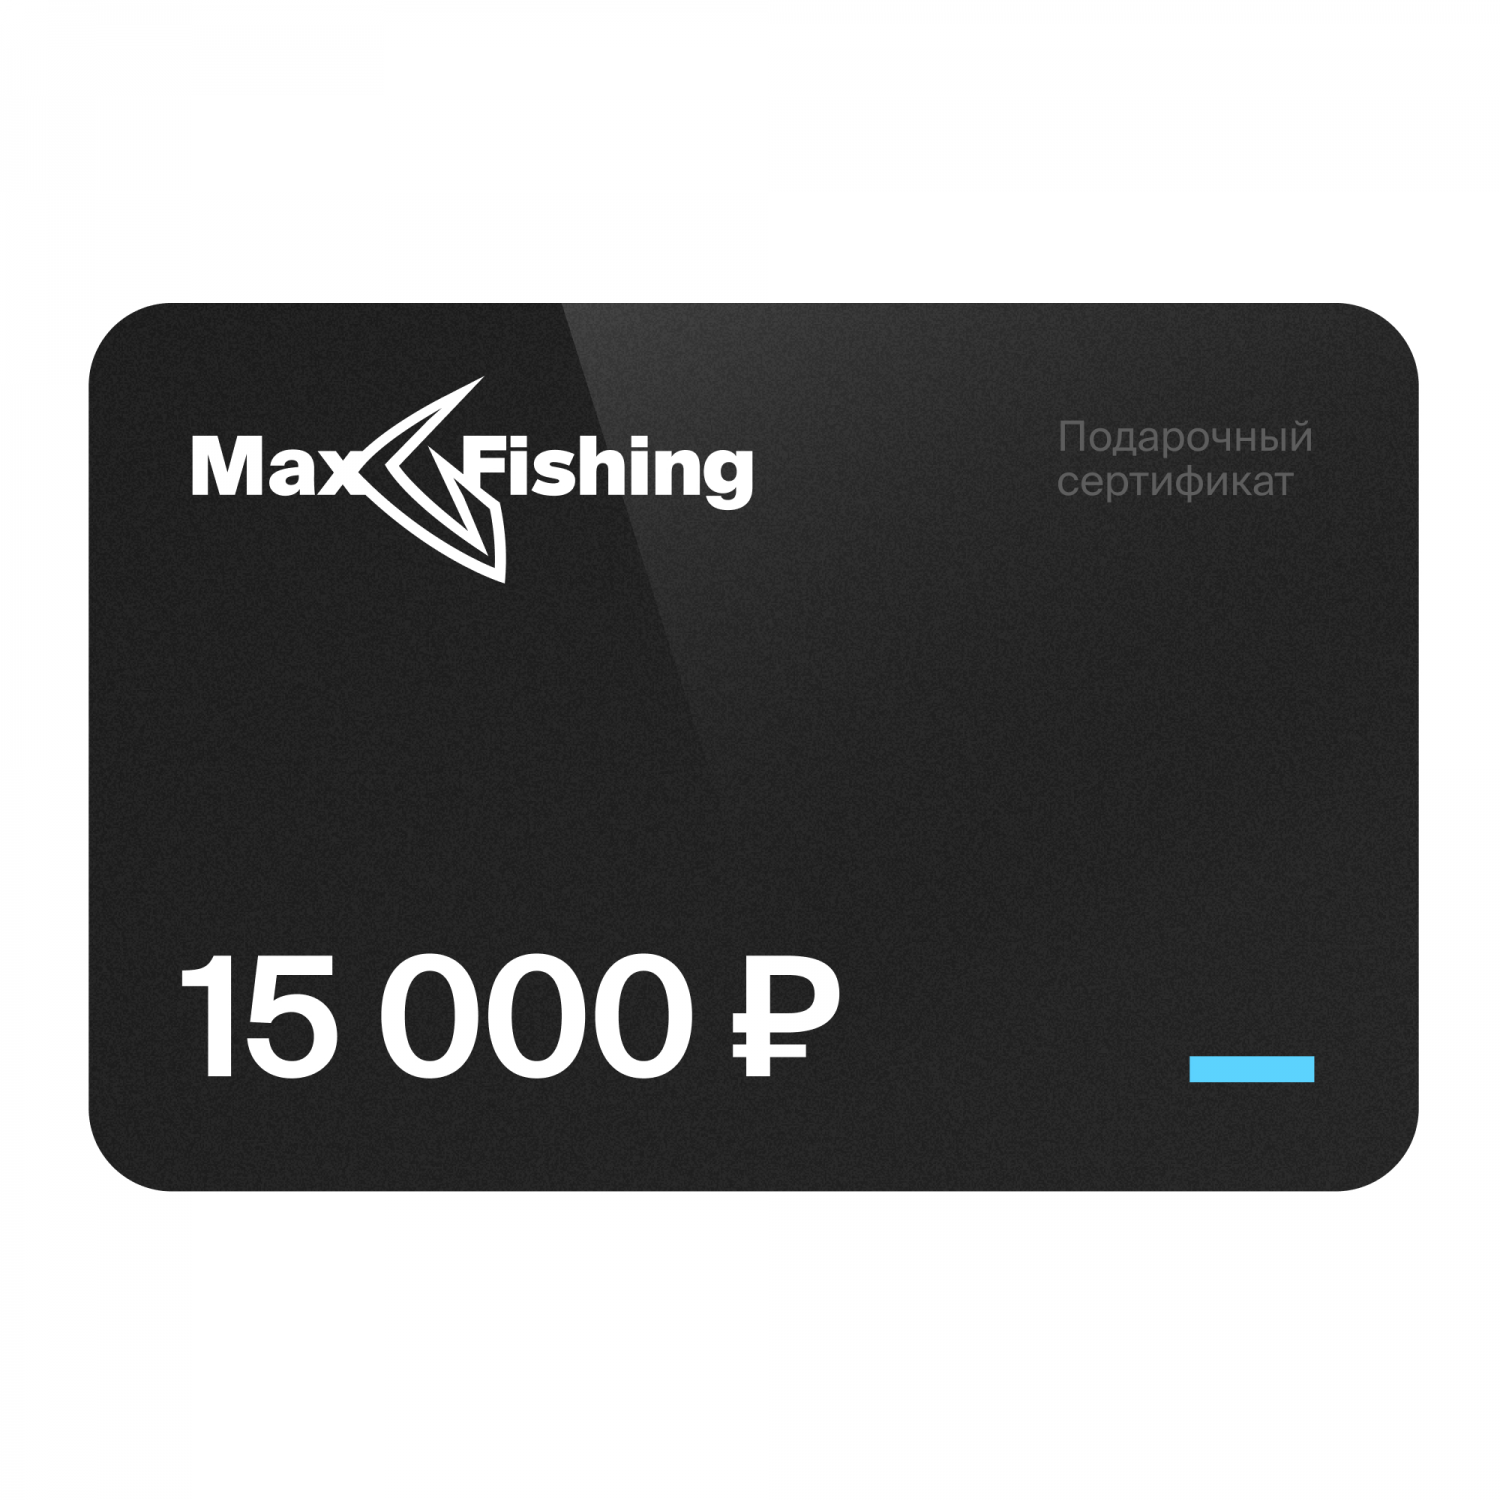 Подарочный сертификат MaxFishing 15 000 ₽ подарочный сертификат maxfishing 15